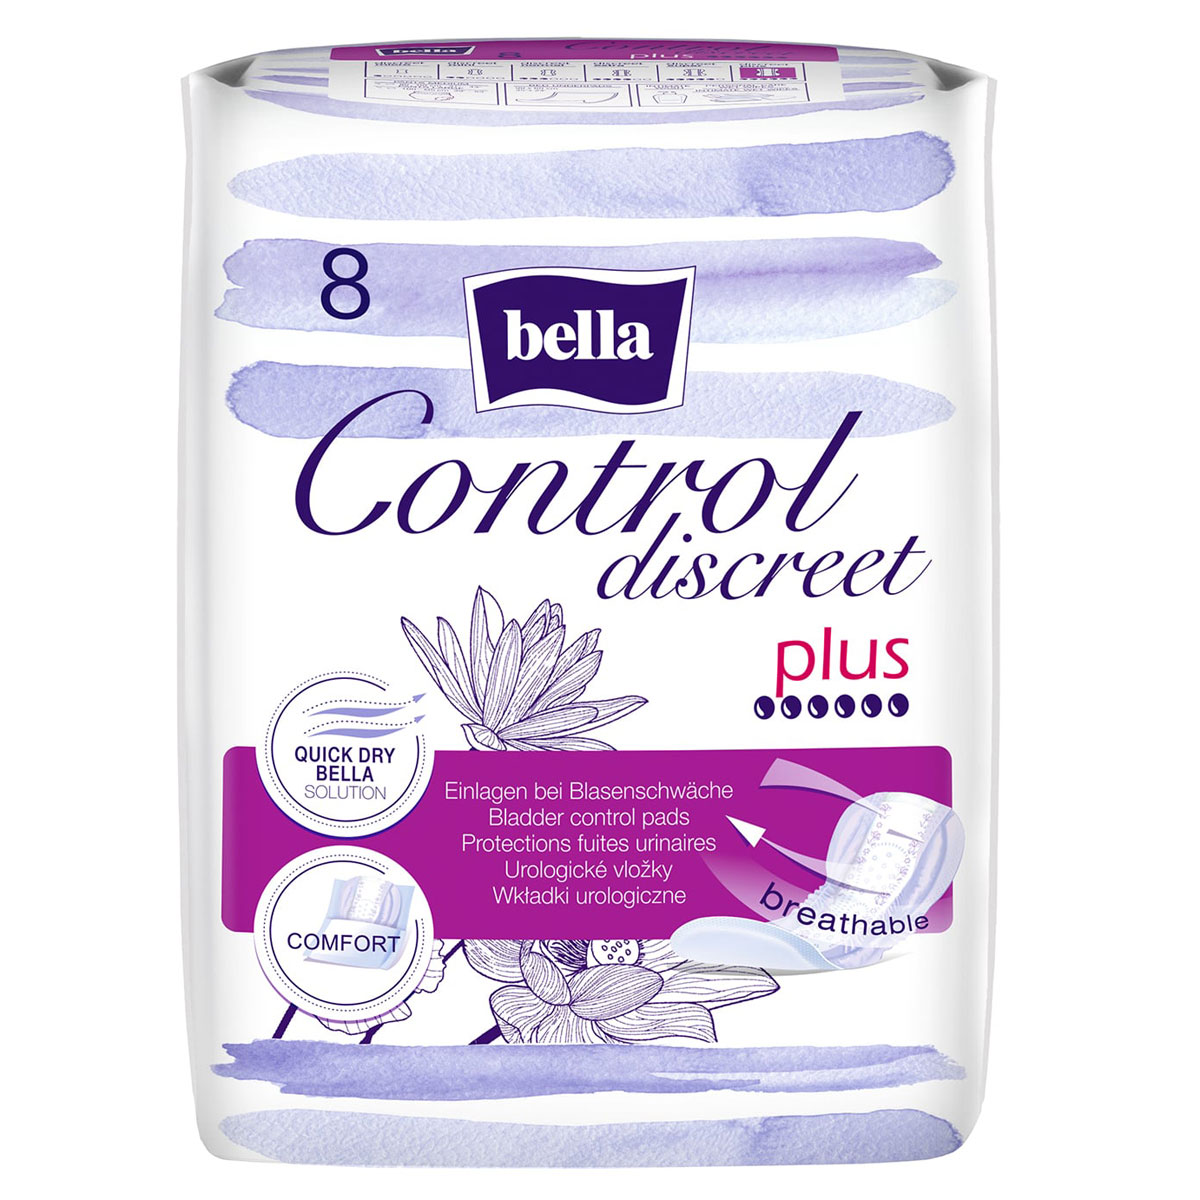 Bella Control Discreet - PLUS - Hygieneeinlagen - 4x8 Stück Pack